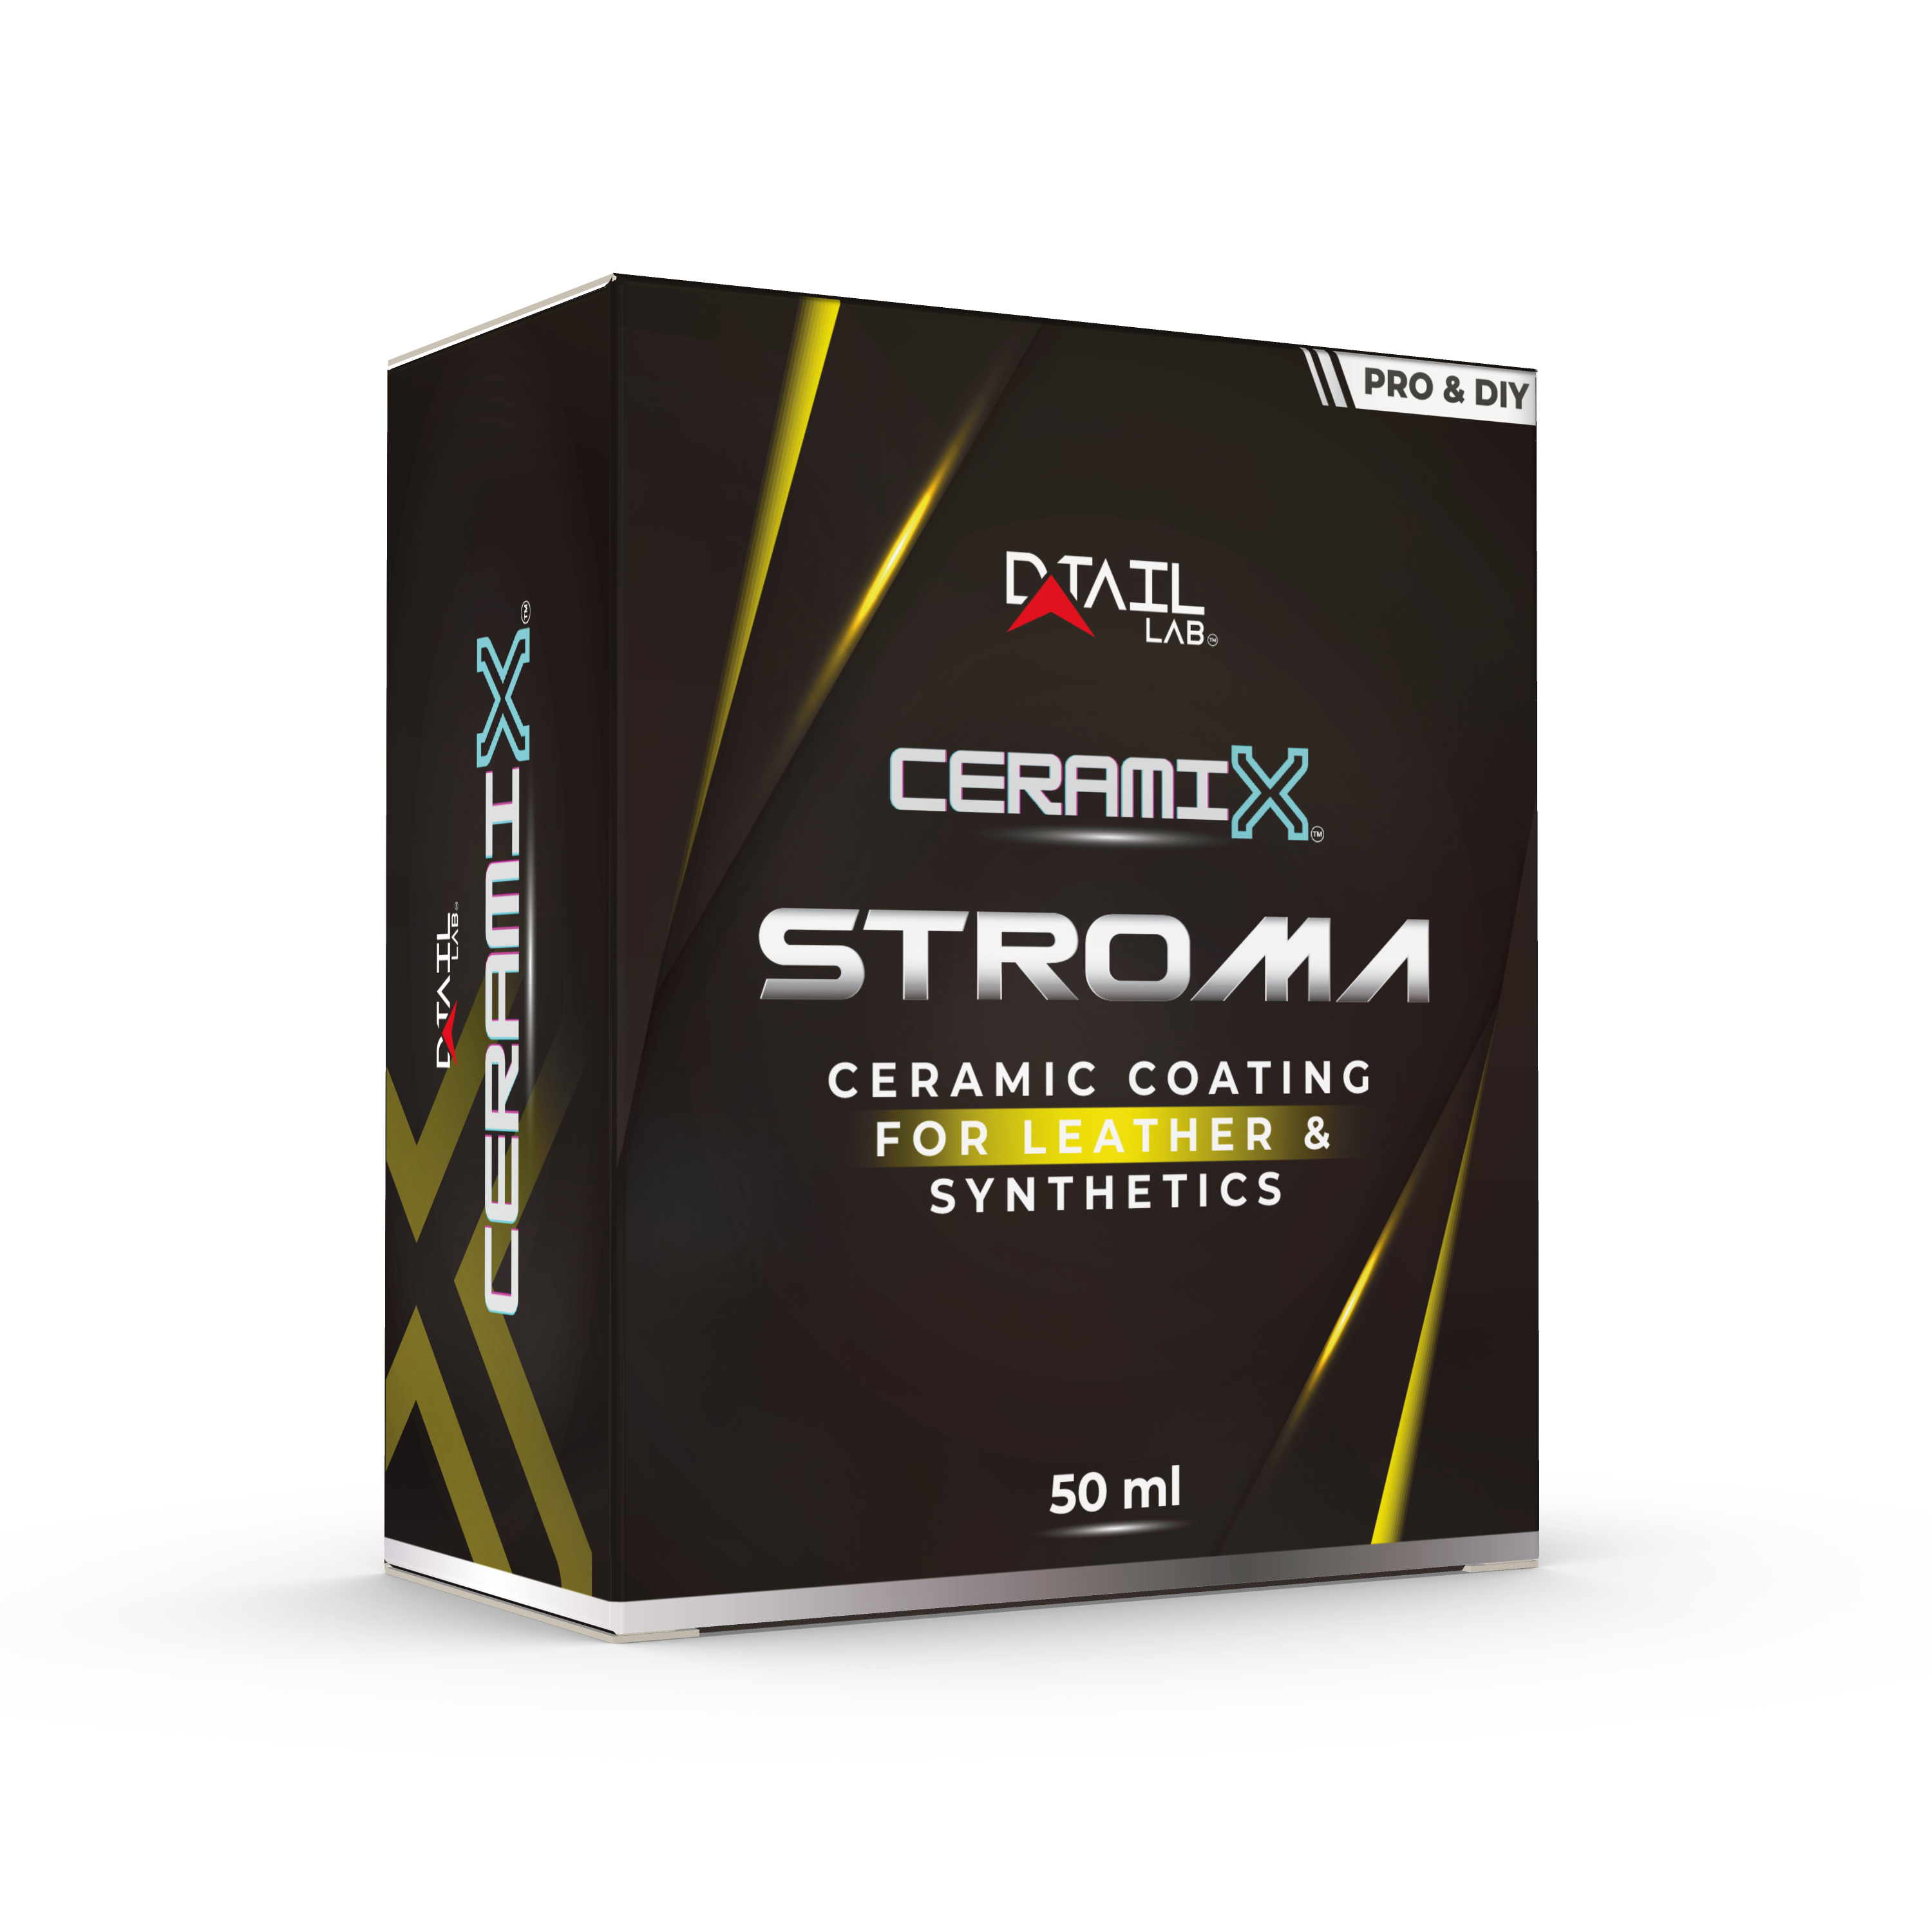 CERAMI-X STROMA Revestimiento cerámico para cuero y sintéticos